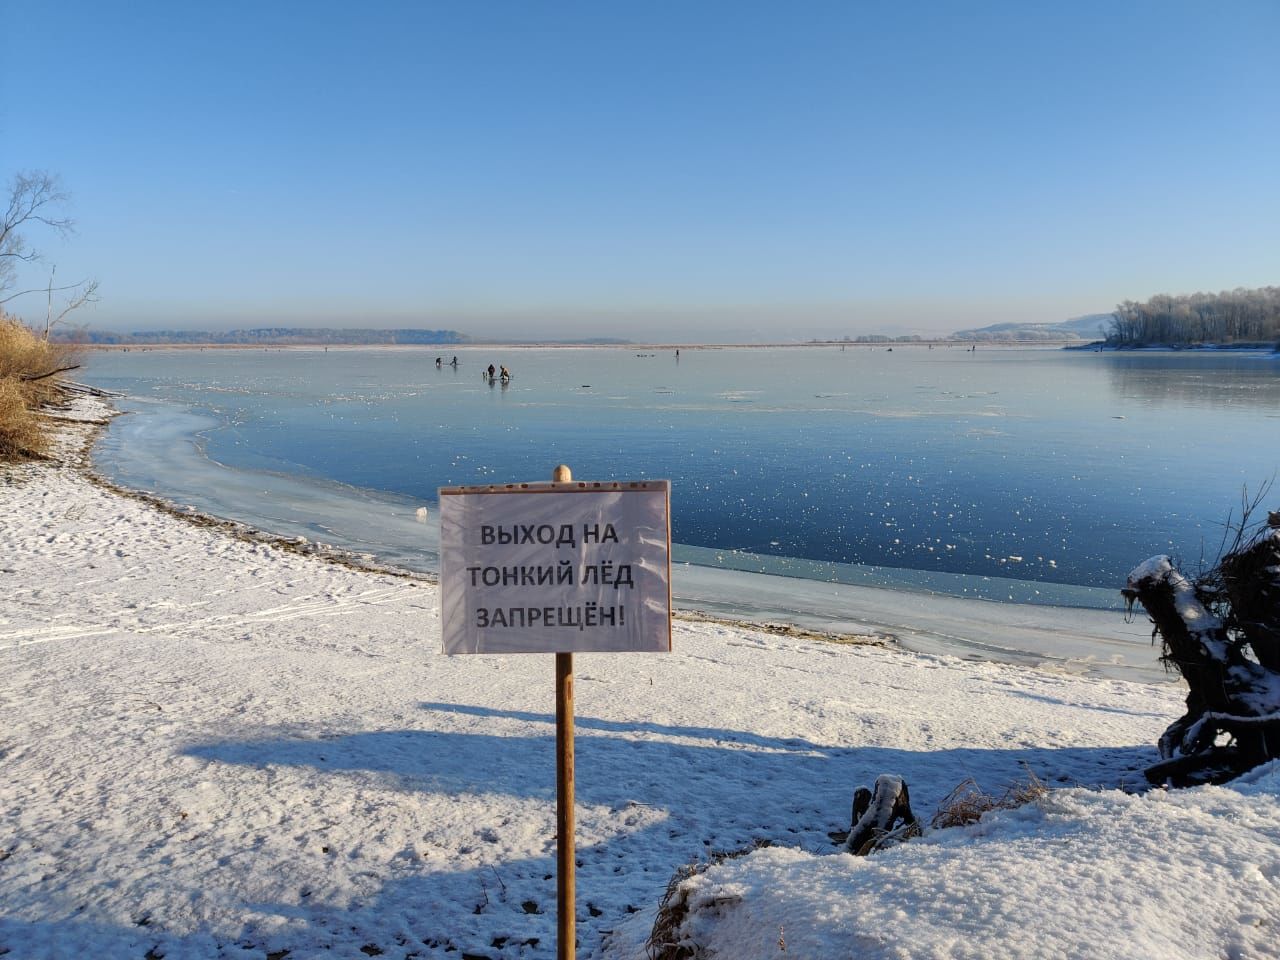 В Зеленодольском районе спасатели предупредили об опасностях нахождения на тонком льду